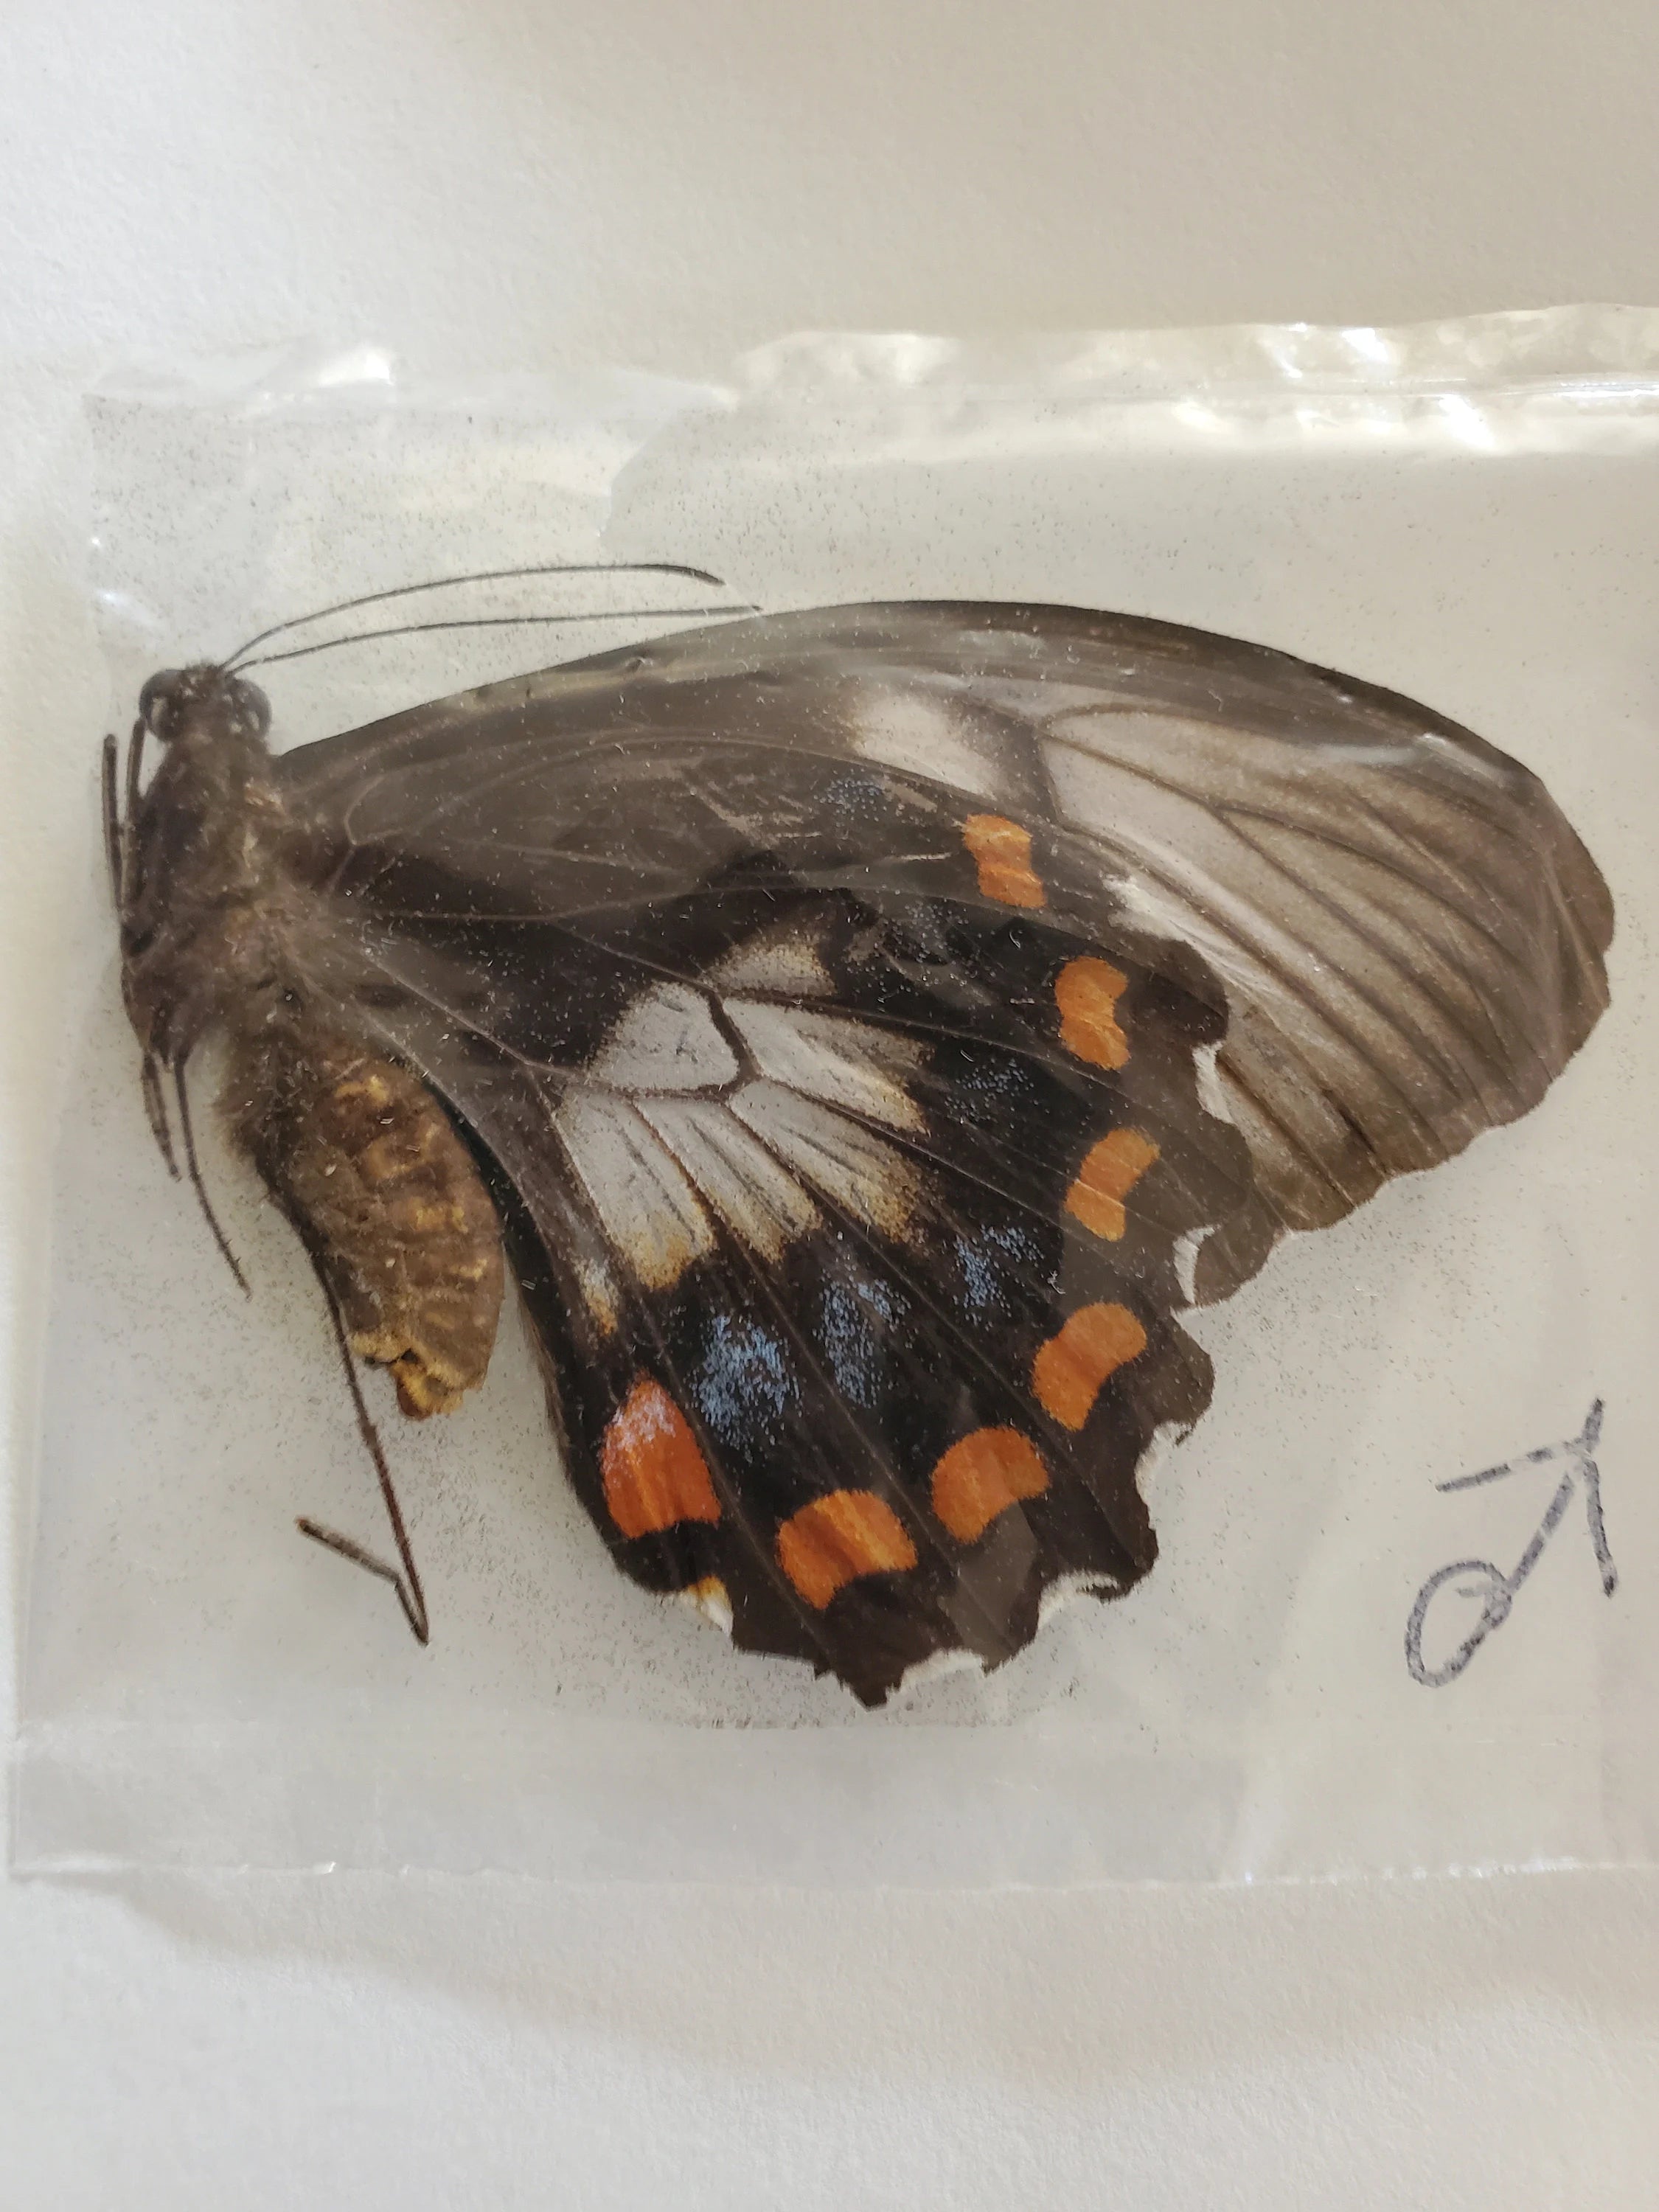 RARE! Papilio inopinatus Male 1977